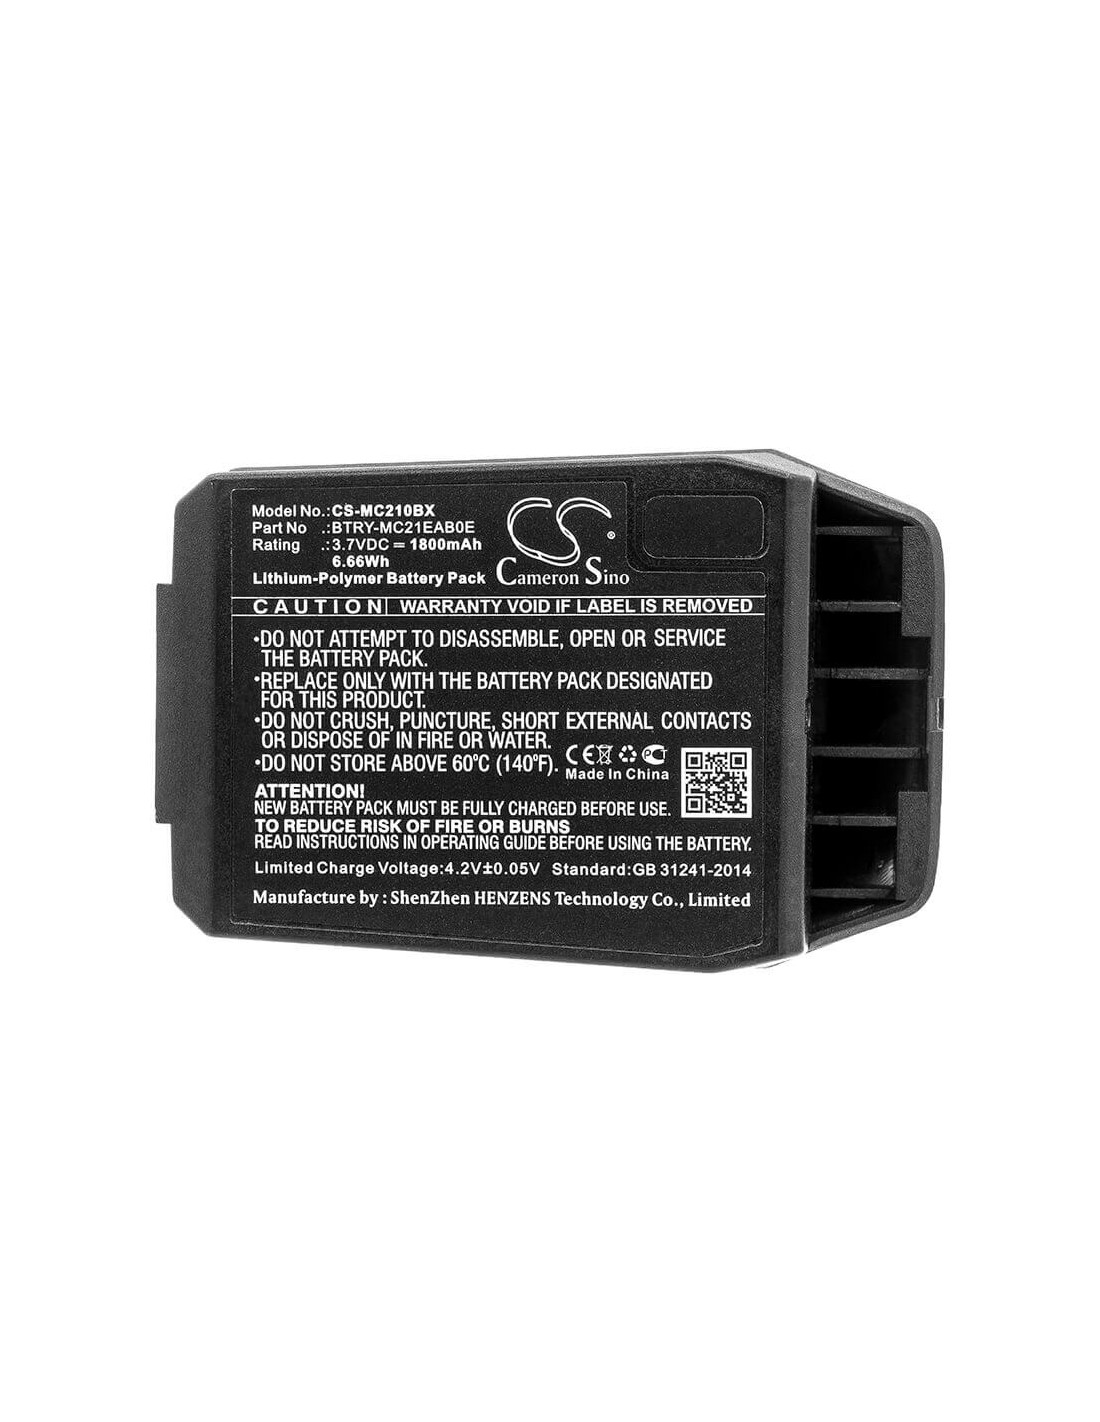 Battery for Motorola, Mc21, Mc2100, Mc2180 3.7V, 1800mAh - 6.66Wh